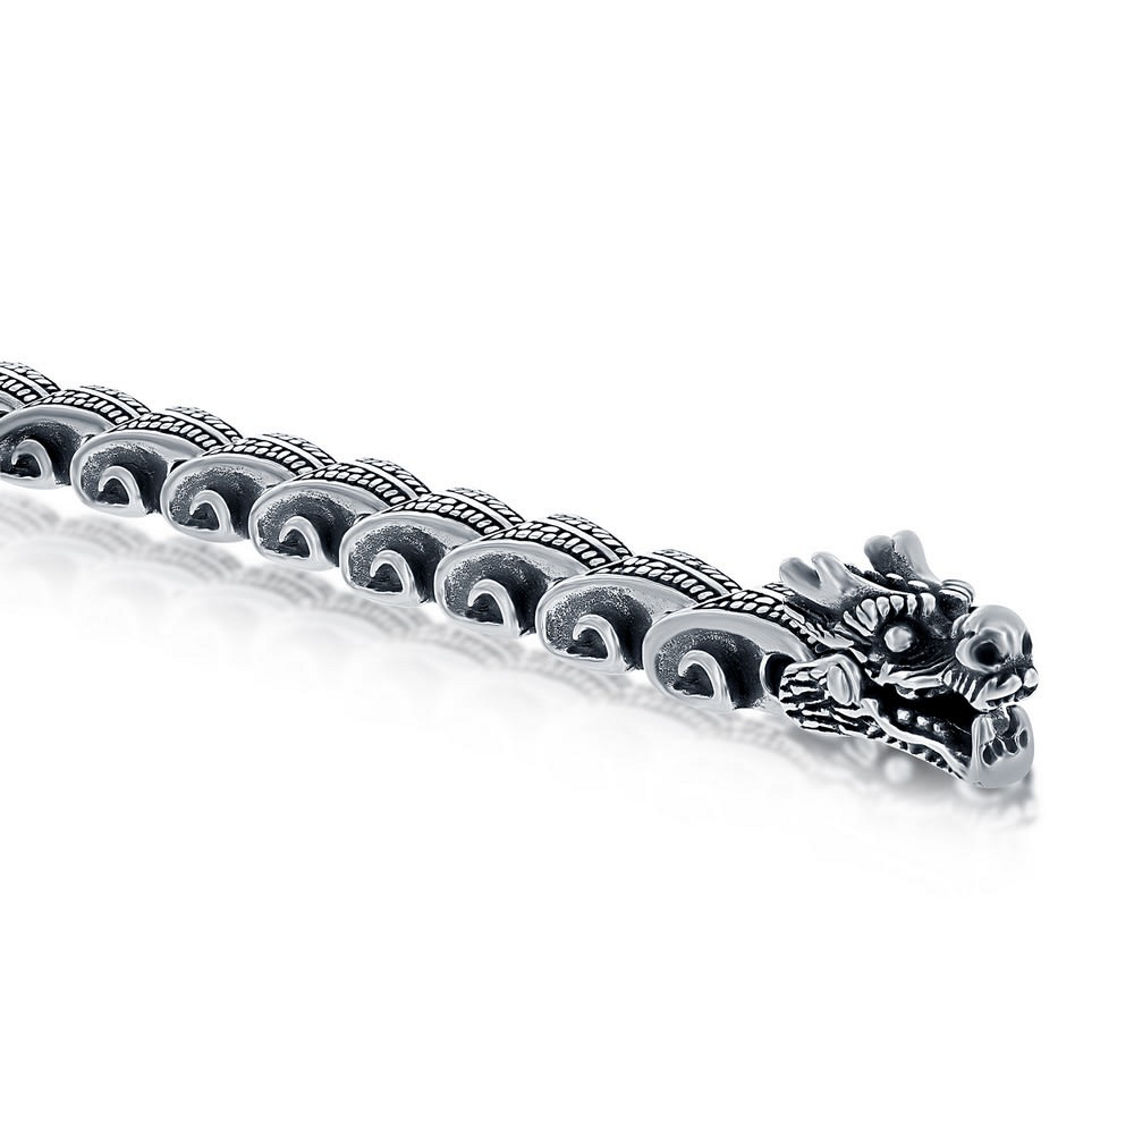 Metallo Stainless Steel Oxidized Dragon Bracelet - Image 2 of 4